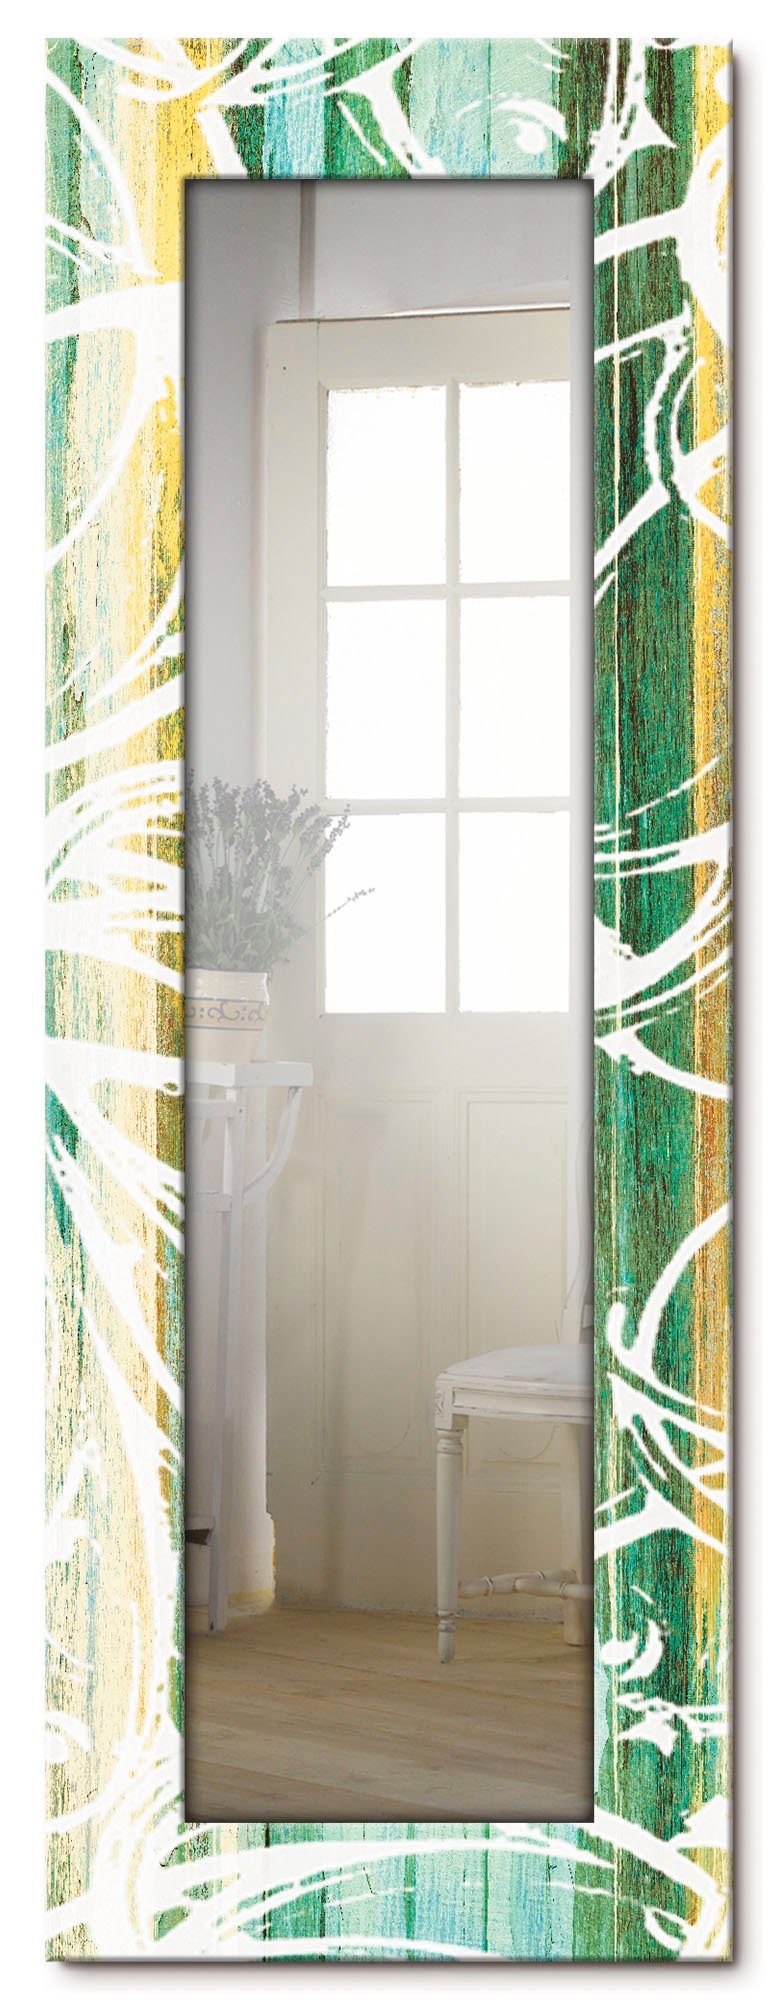 Artland Dekospiegel Ornamente im modernen mit Stil, Motivrahmen, Ganzkörperspiegel, gerahmter Wandspiegel, Landhaus